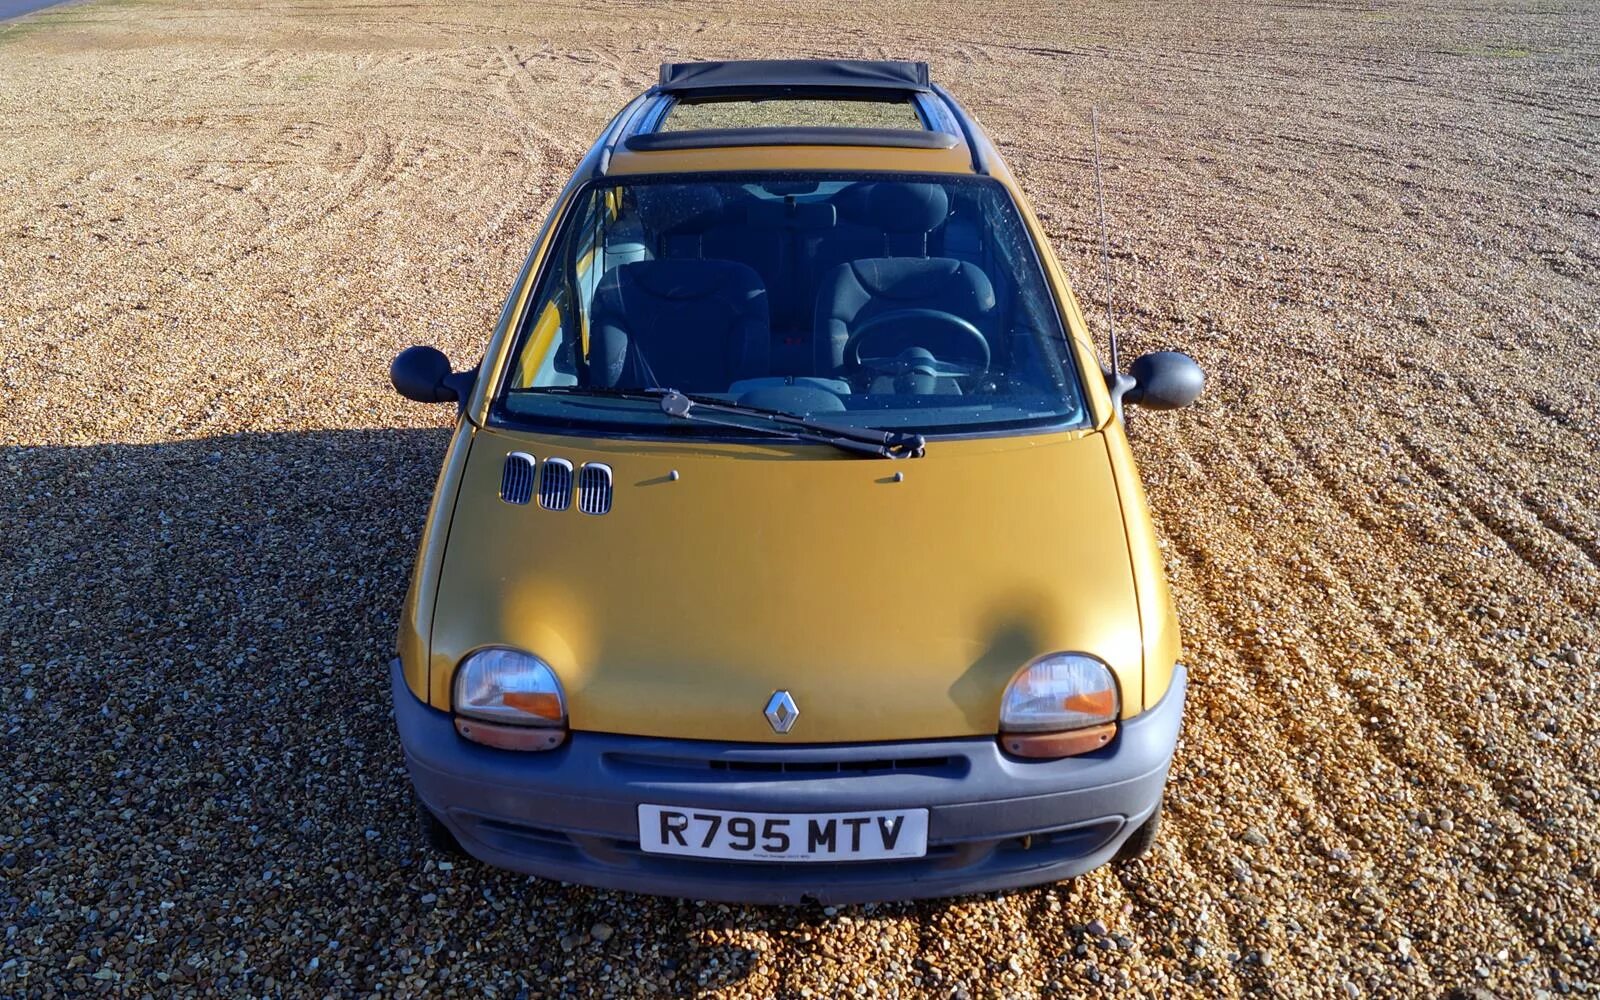 Renault 1998. Renault Twingo 1998. Рено Твинго 4. Twingo Renault mk1. Renault Twingo 1.